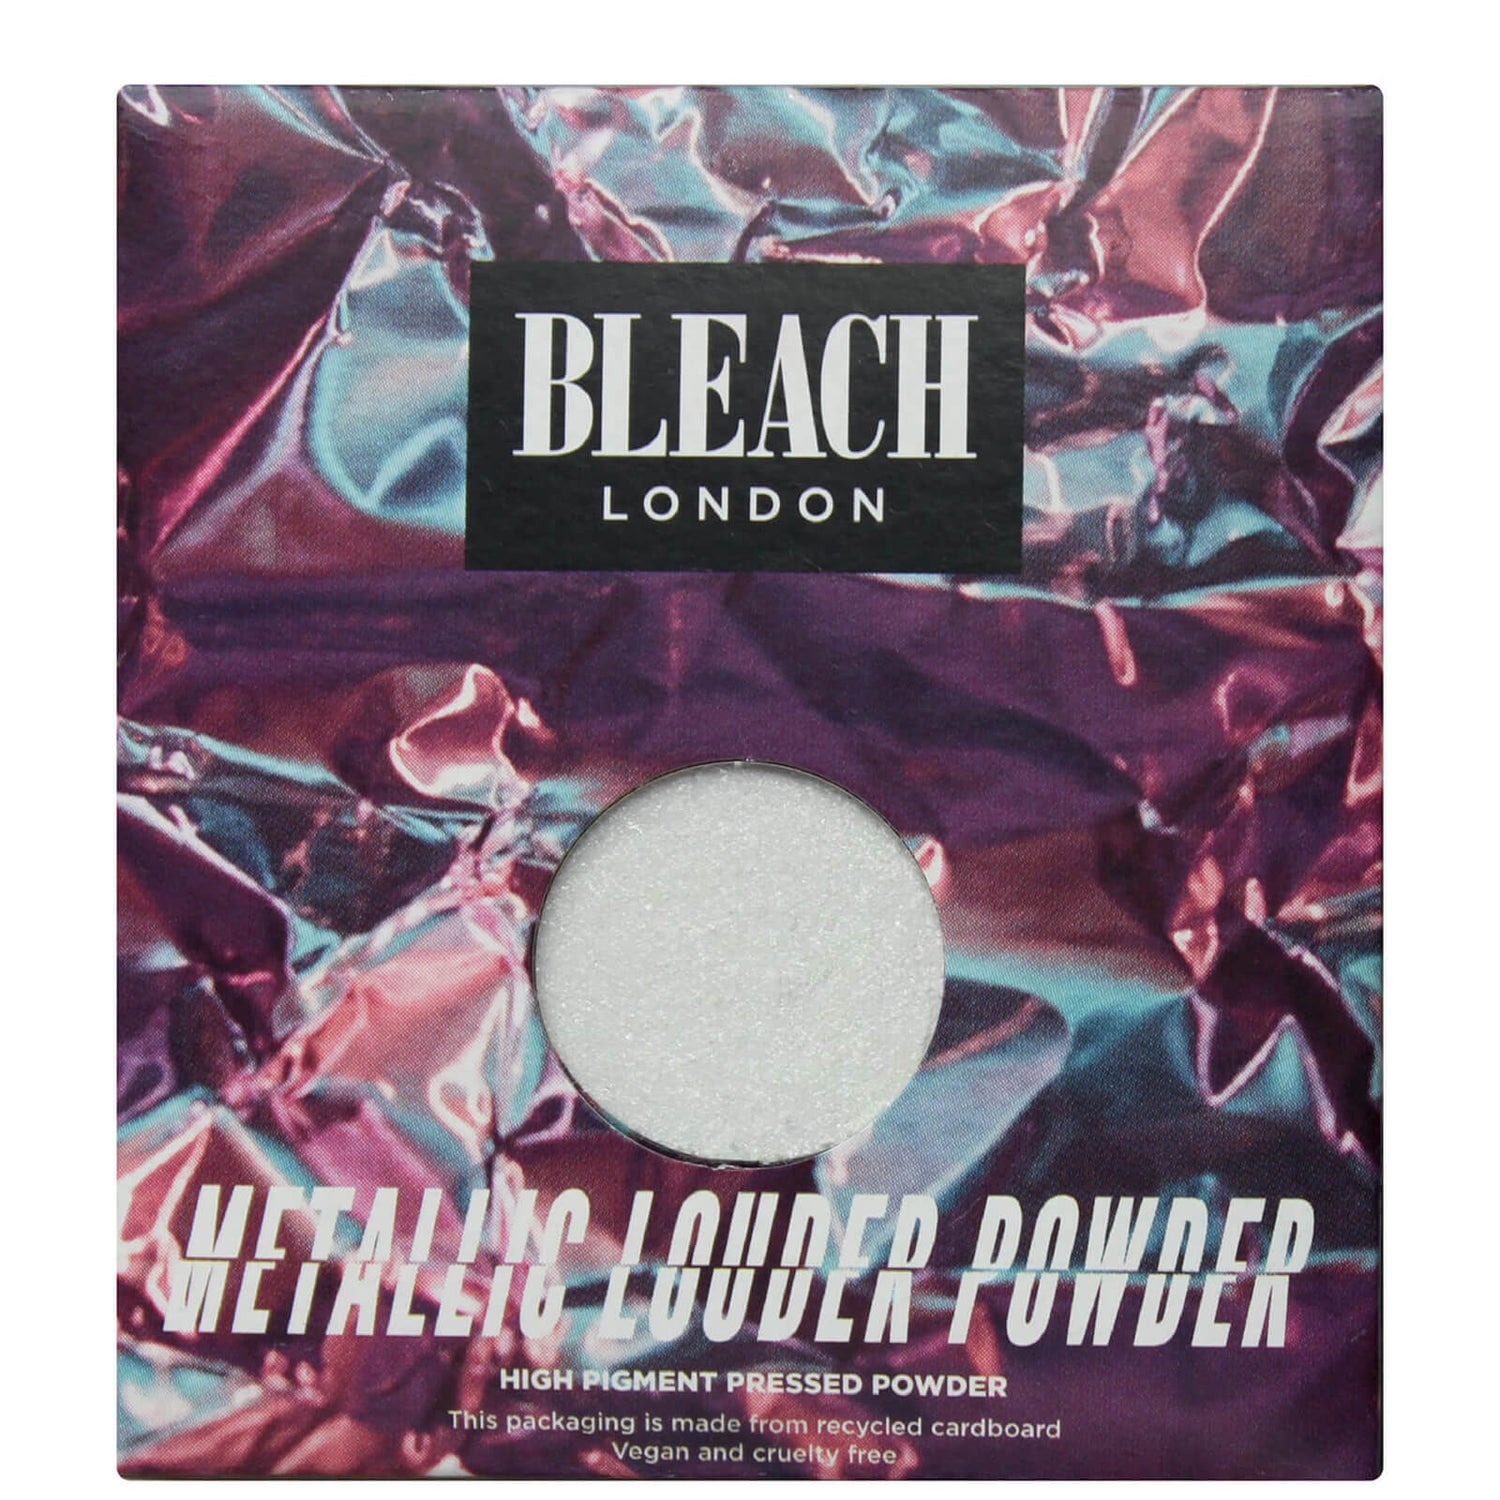 Ombre à paupières Metallic Louder Powder BLEACH LONDON – P1 Me